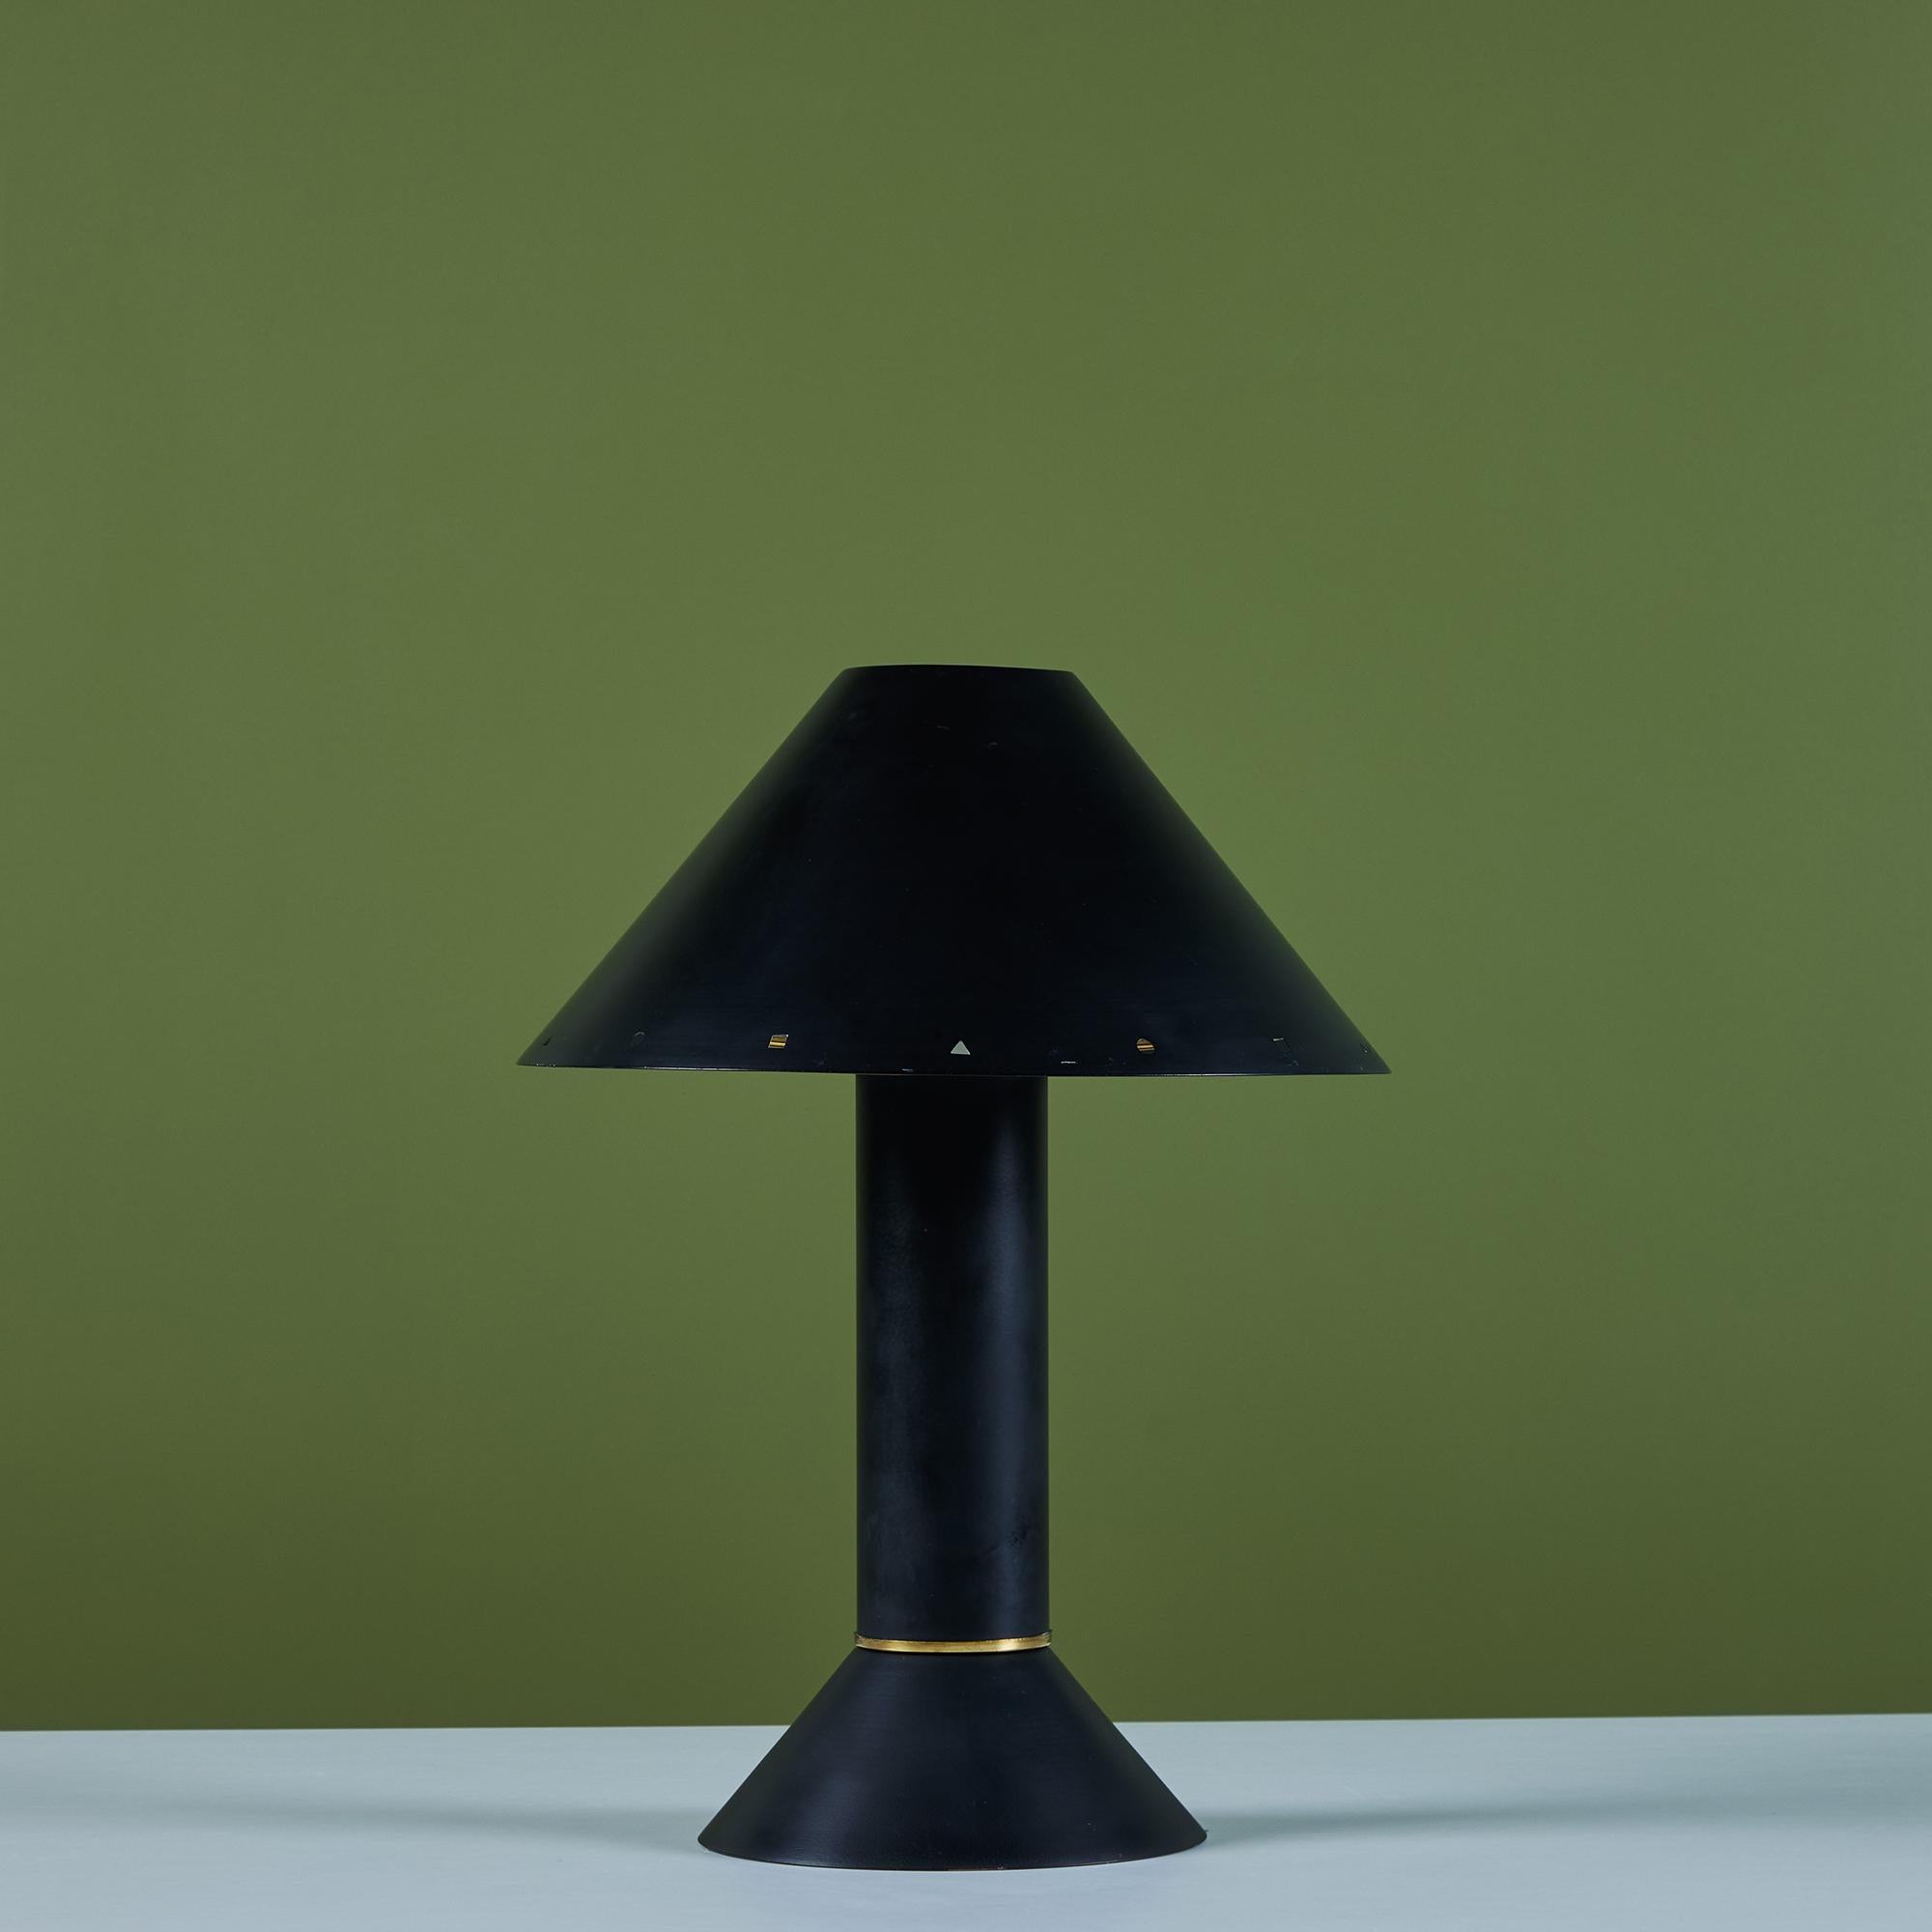 Lampe de table postmoderne du designer de luminaires de Los Angeles Ron Rezek, c.C., années 1980. La lampe présente un cadre en métal émaillé noir et un abat-jour noir amovible avec un anneau en laiton poli qui se trouve au bas de la base en forme